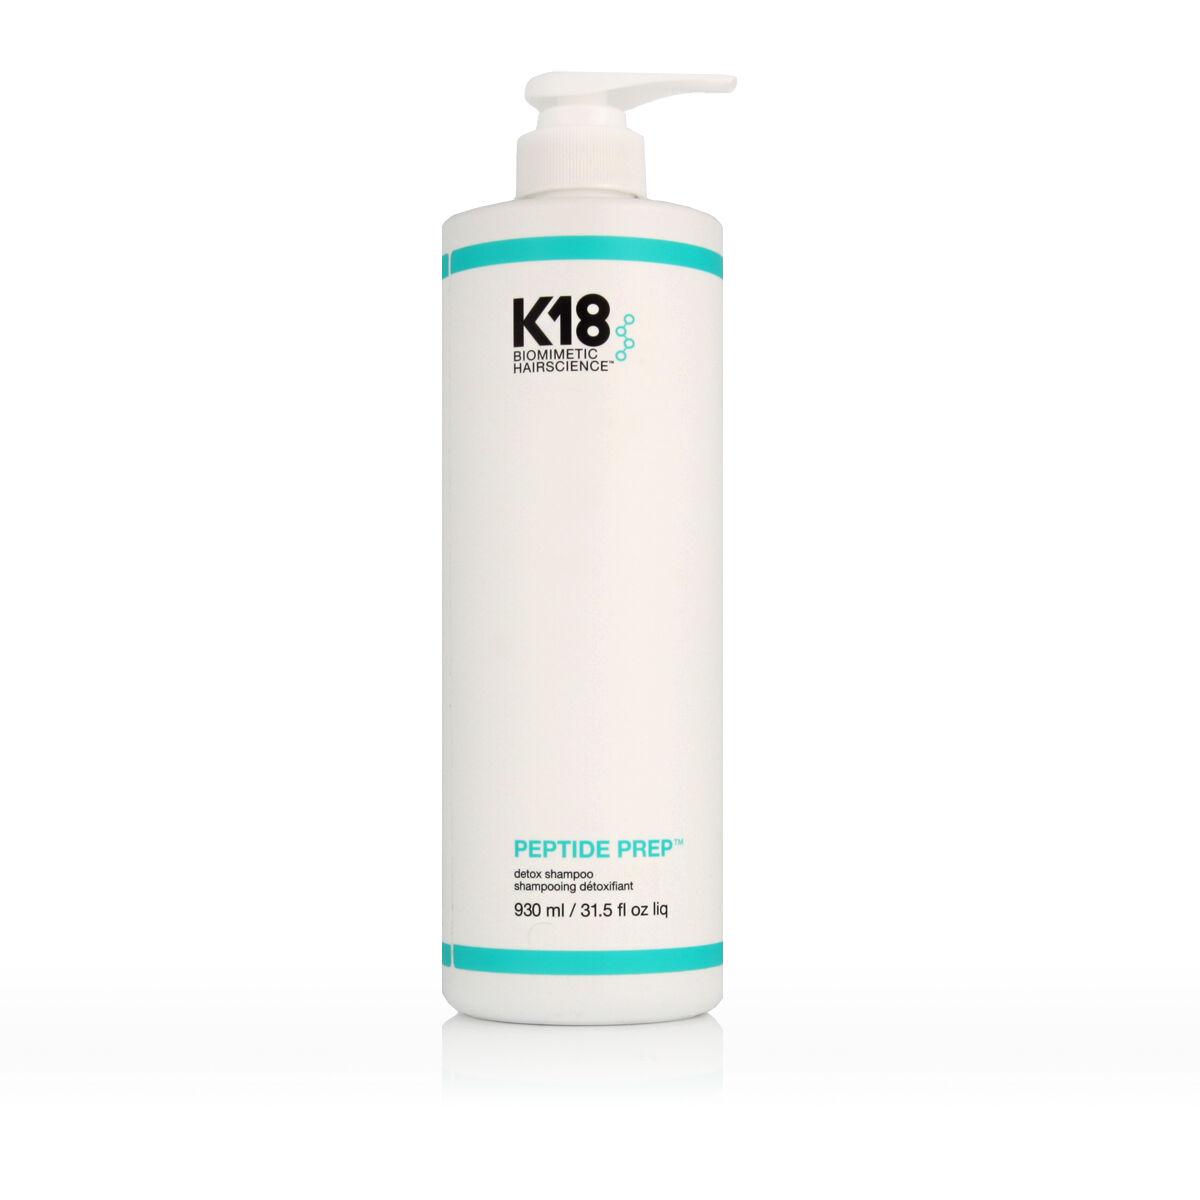 Billede af Shampoo K18 Peptide Prep Detox 930 ml 250 ml